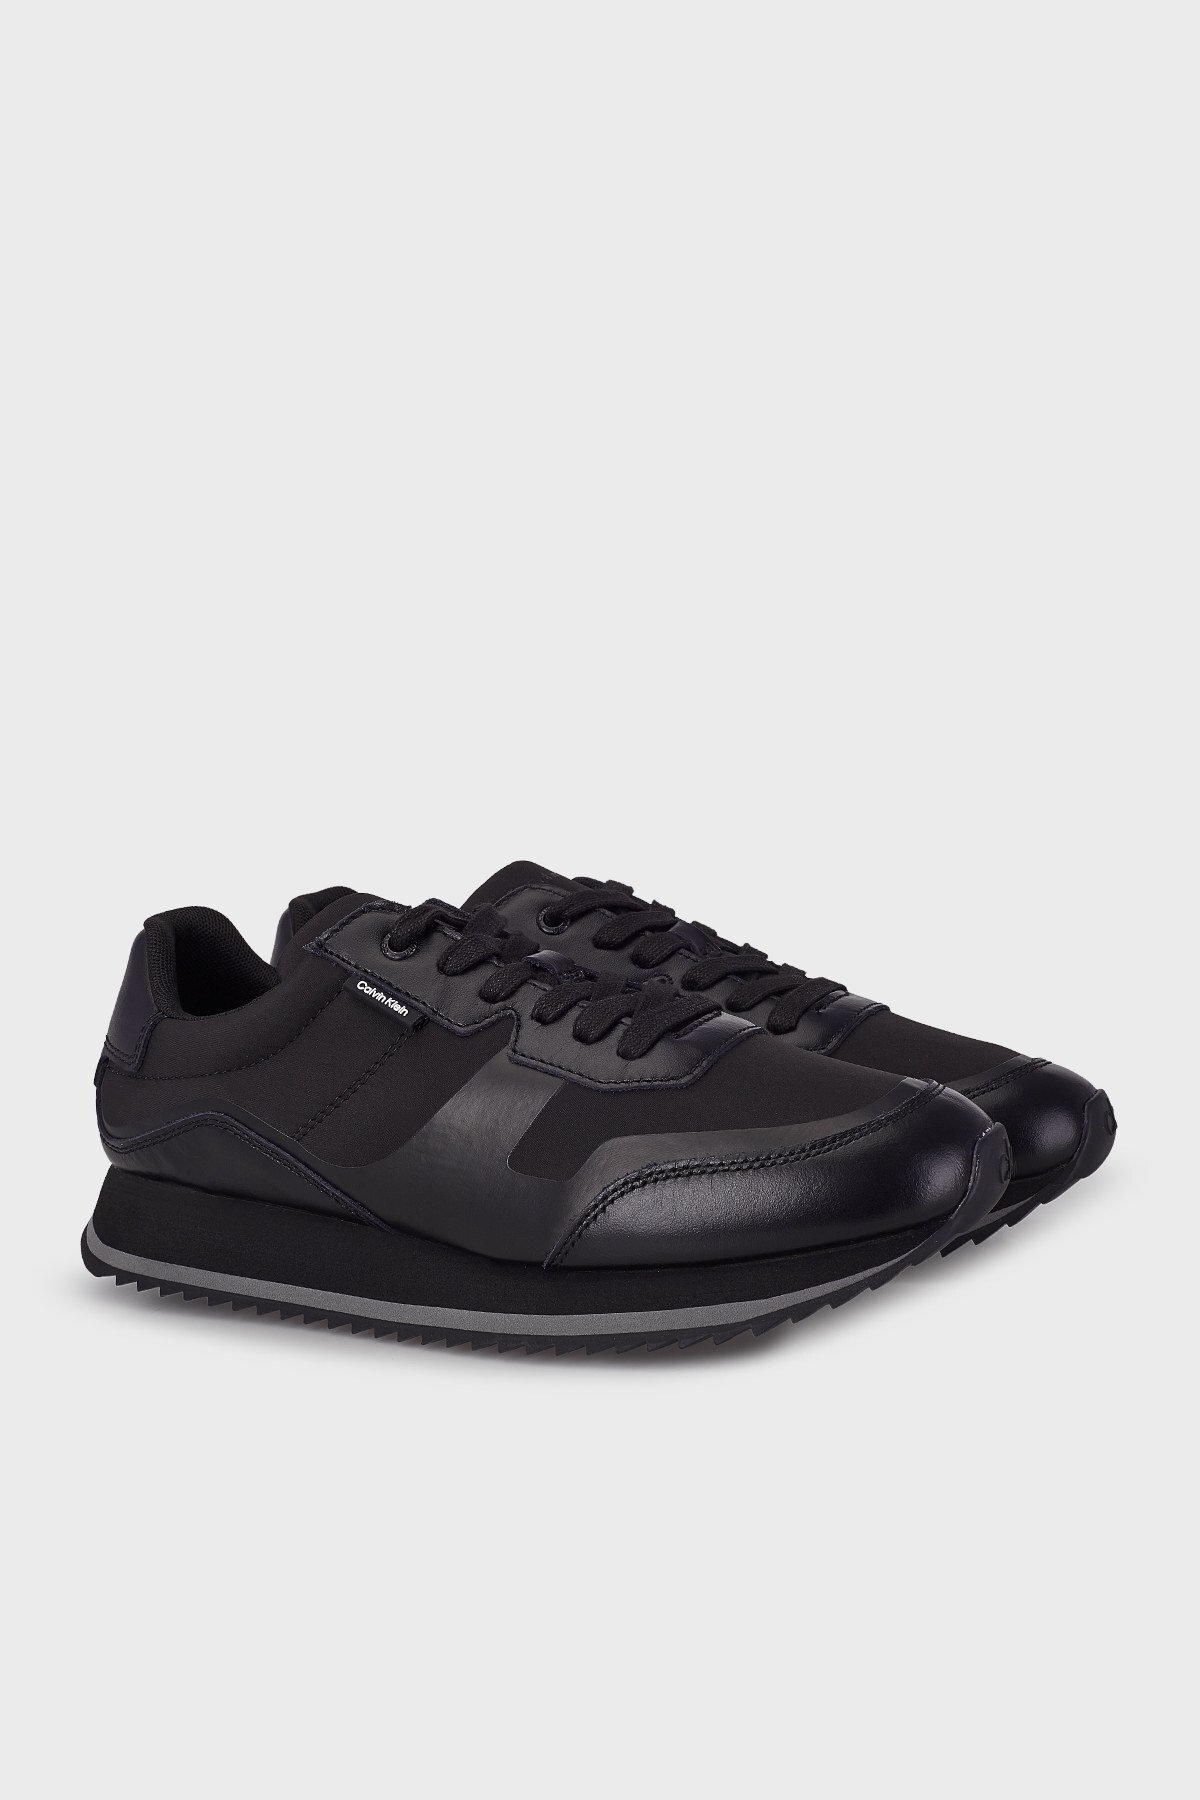 Calvin Klein Hakiki Deri Sneaker Erkek Ayakkabı HM0HM00551 0GJ SİYAH